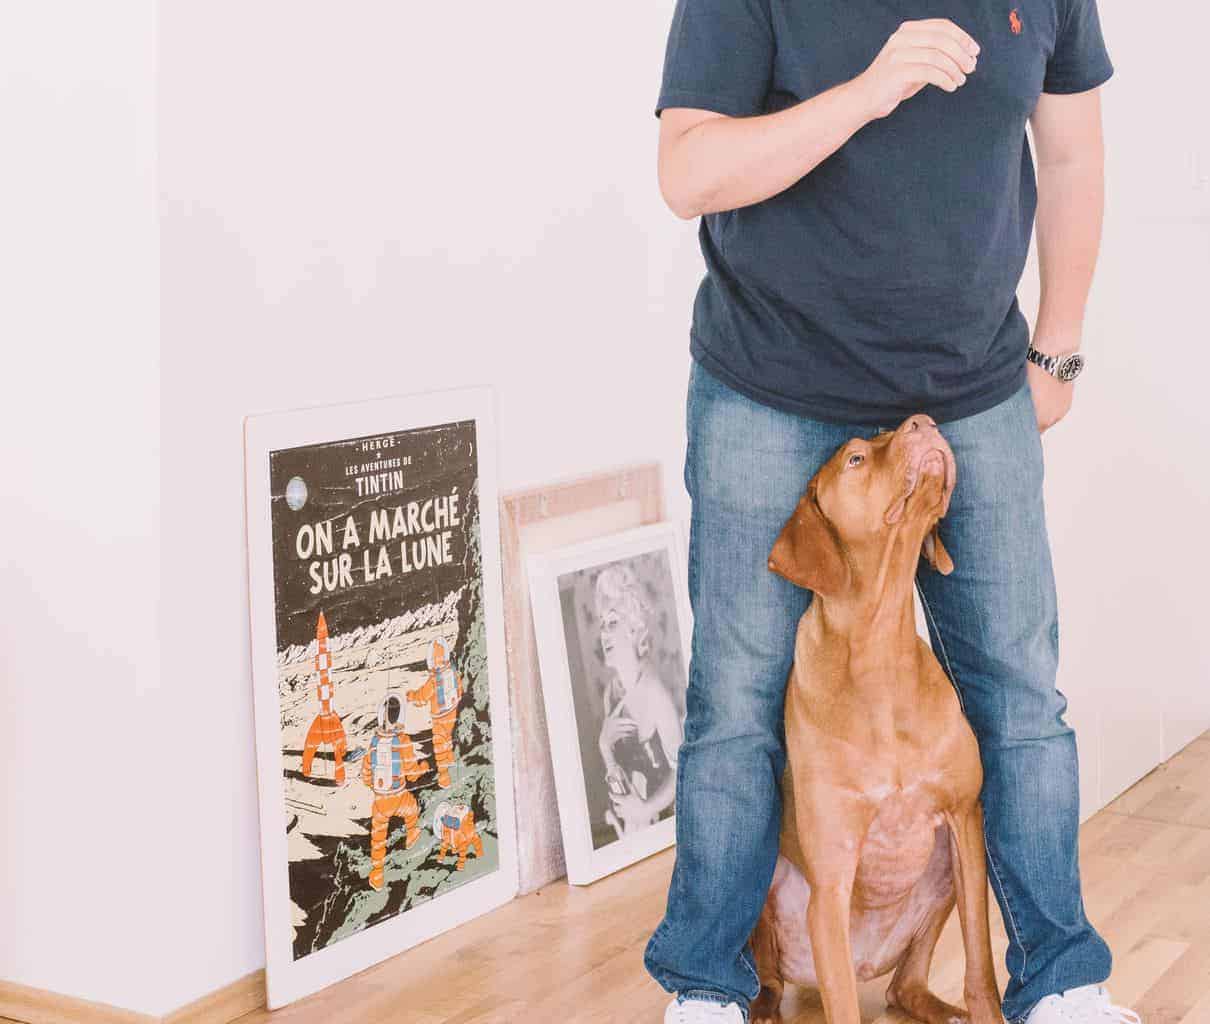 A man standing next to a dog